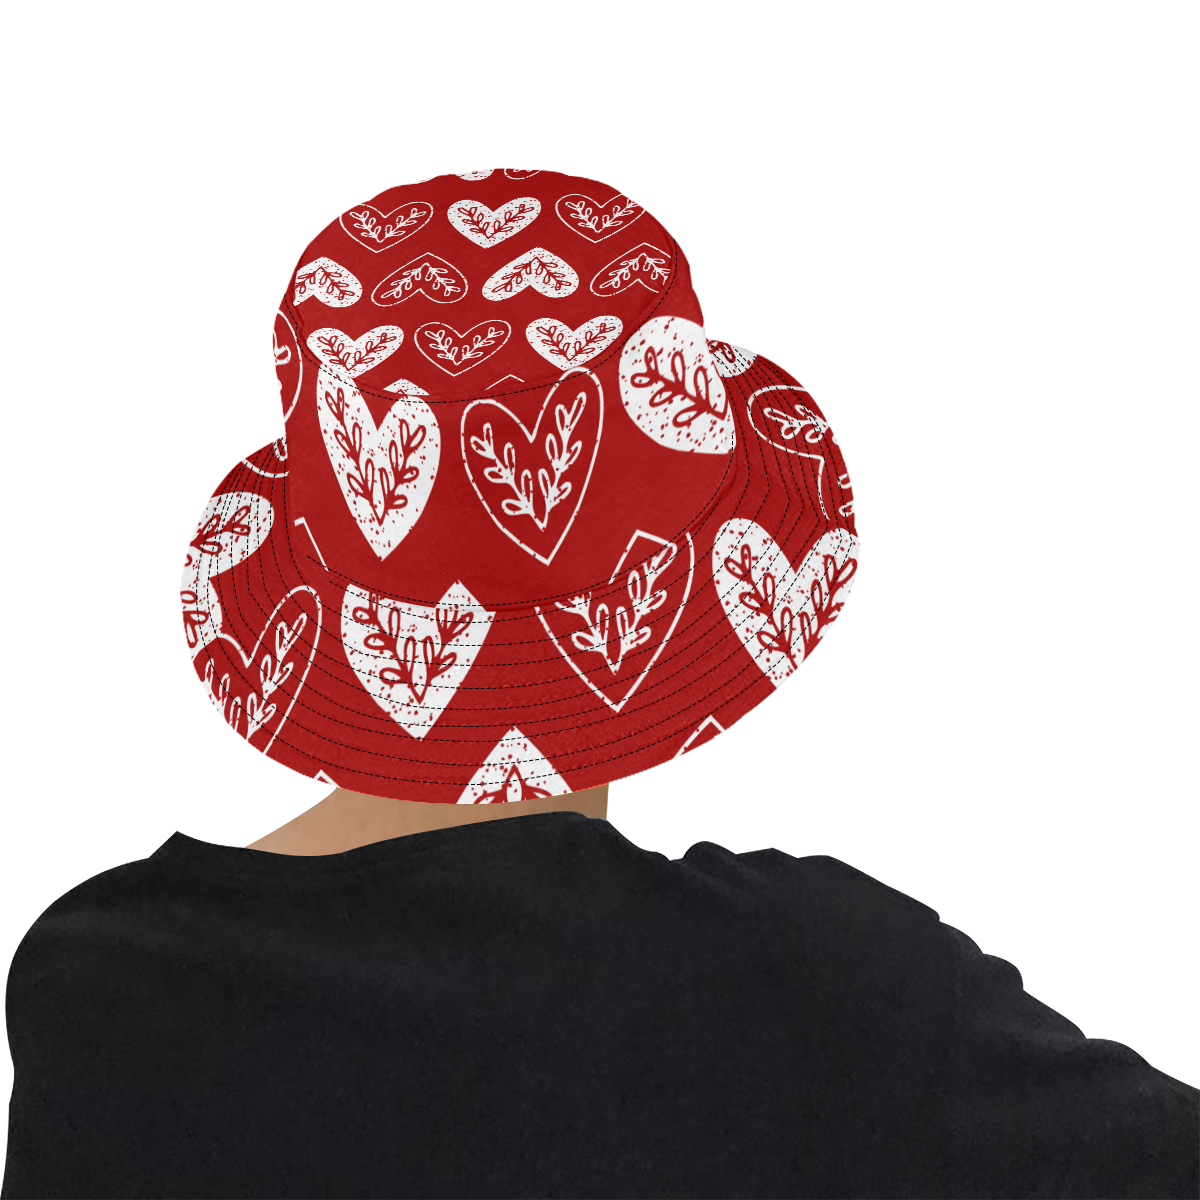 Folki Heart All Over Print Bucket Hat for Men